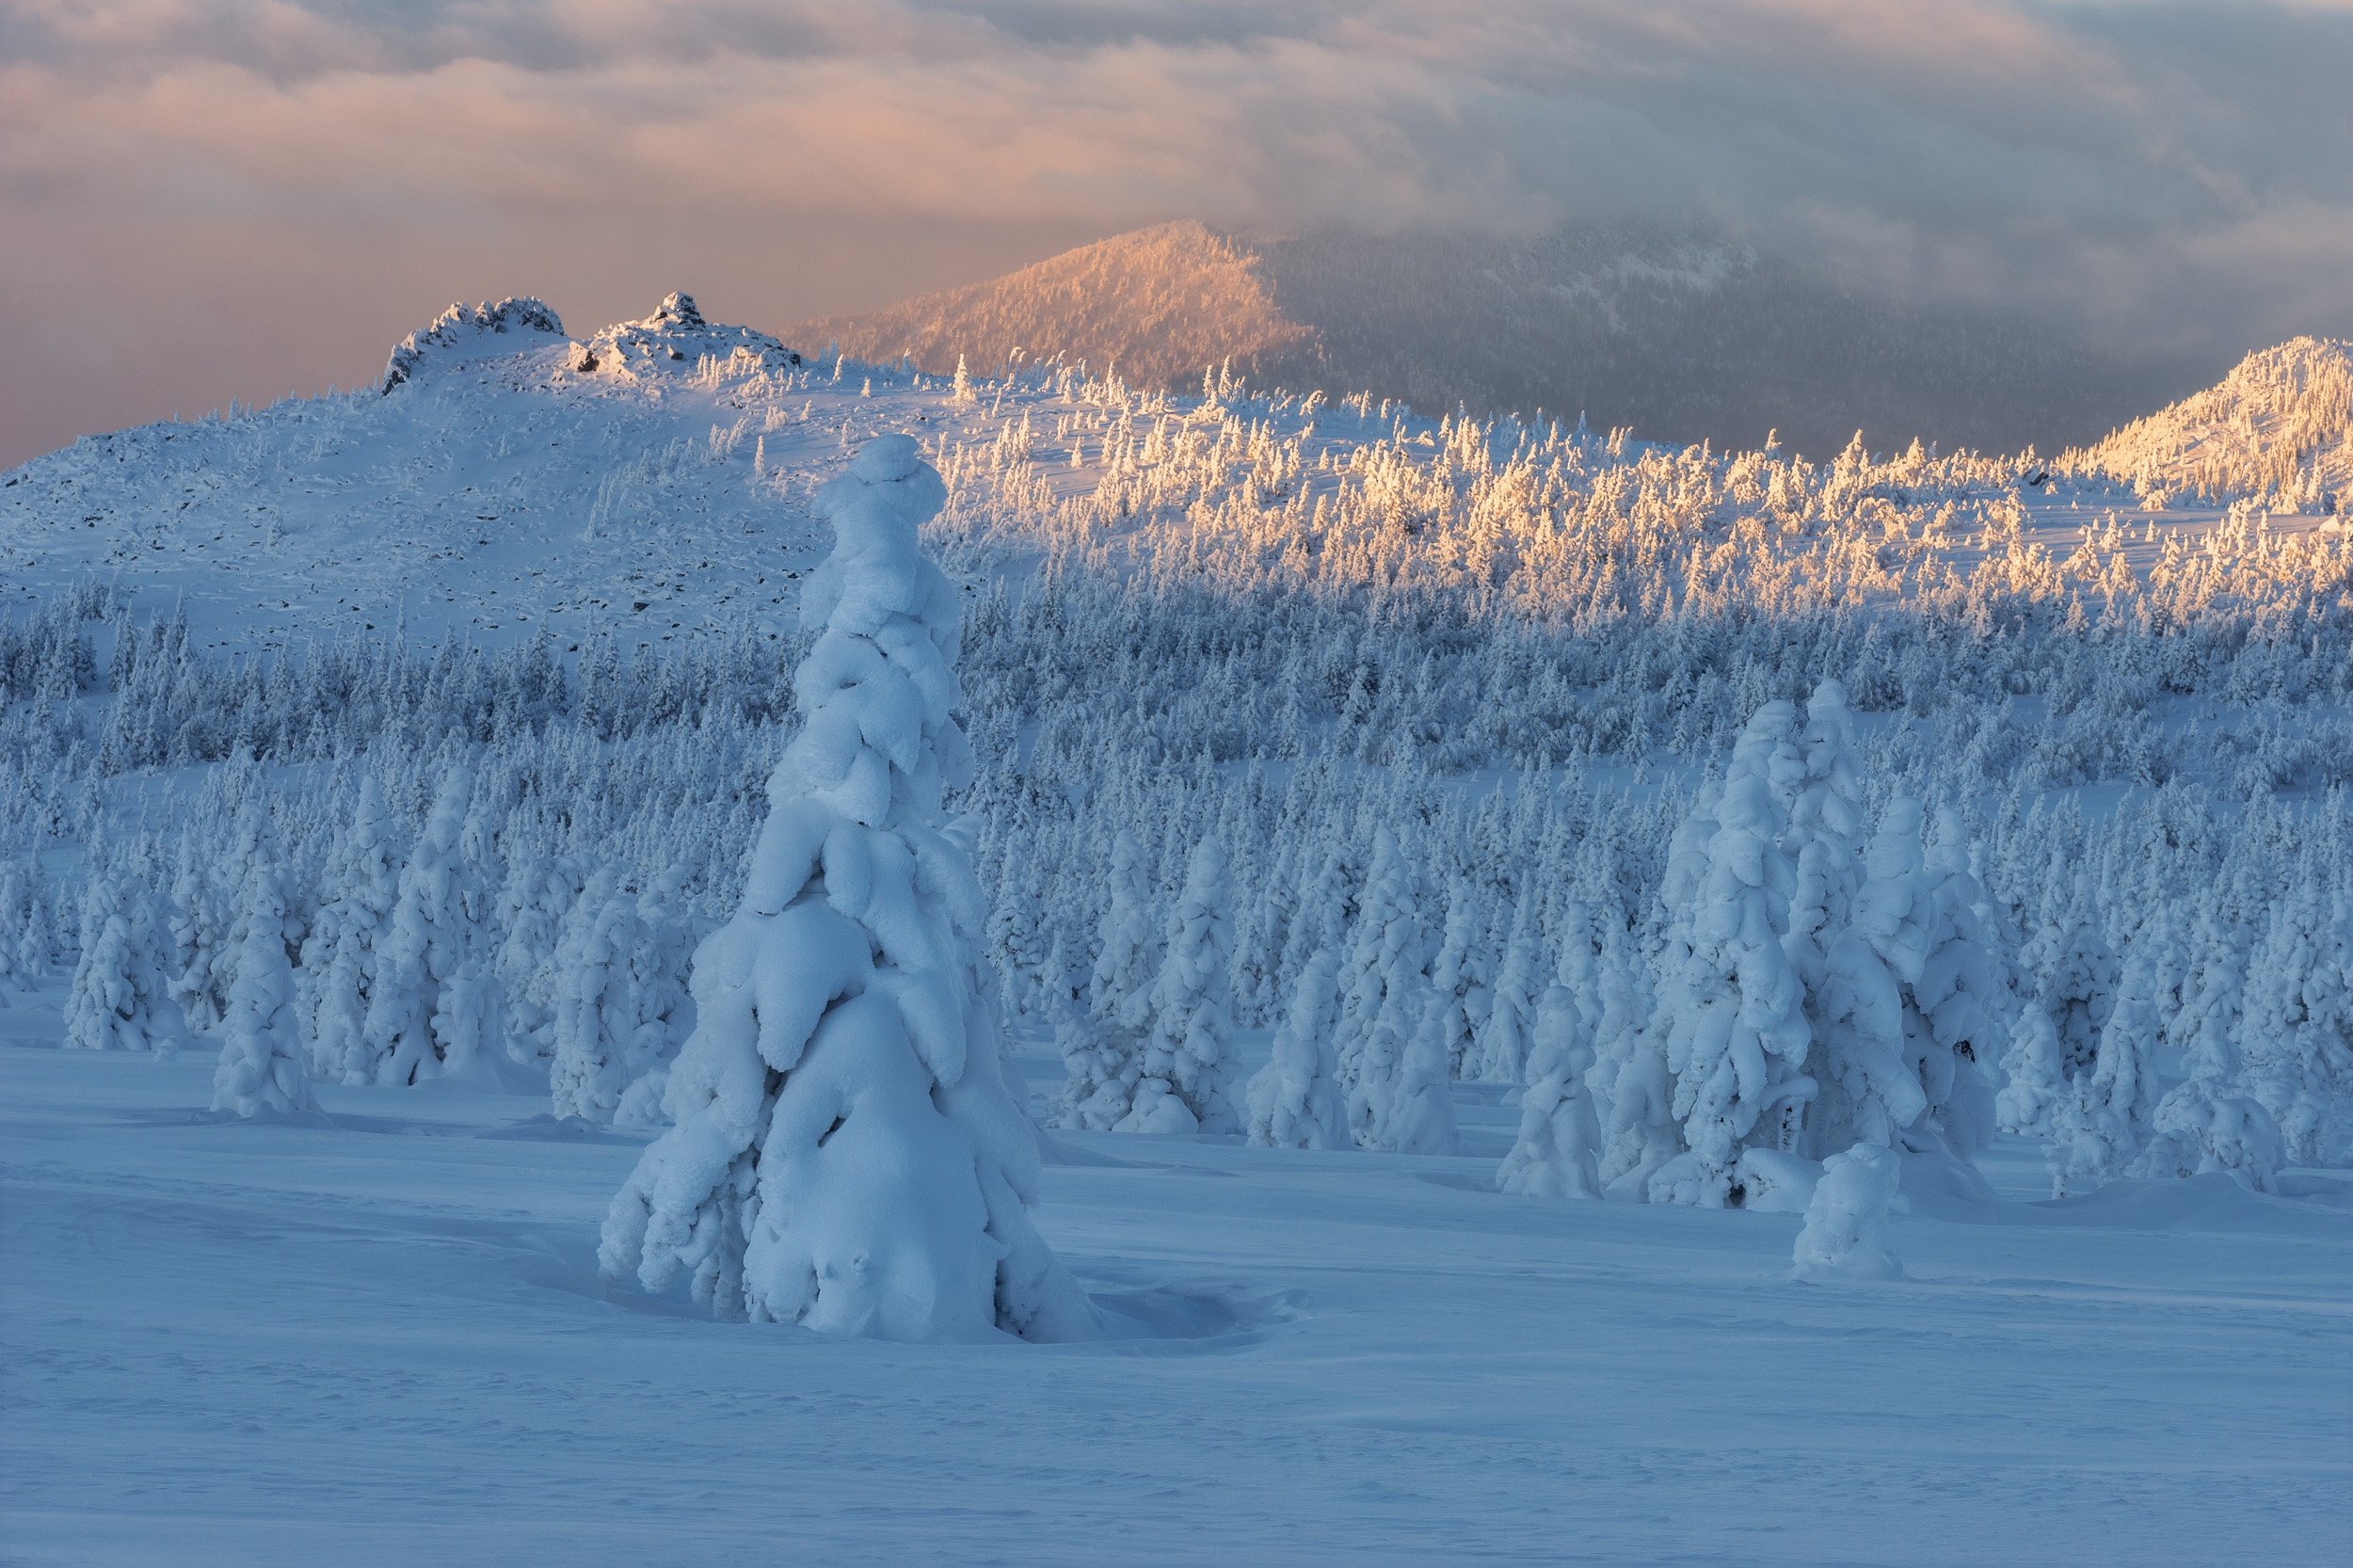 Скачать обои бесплатно Зима, Природа, Снег, Ель, Земля/природа картинка на рабочий стол ПК